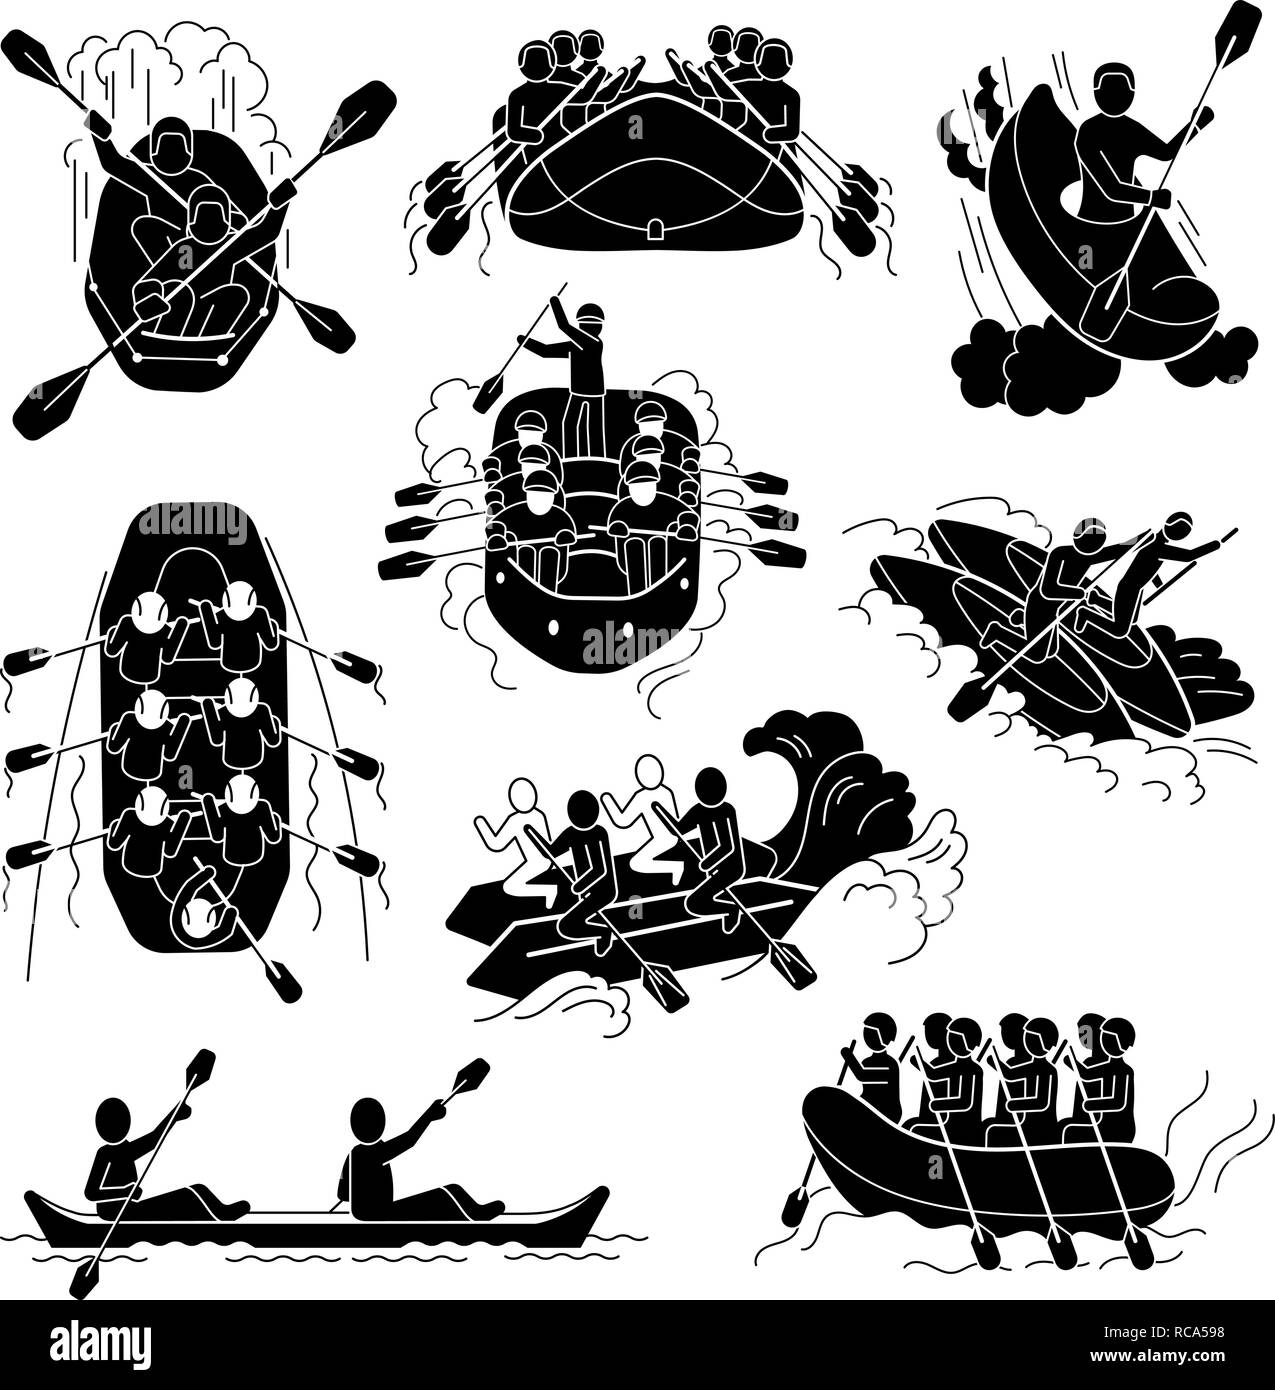 Rafting icons set, le style simple Illustration de Vecteur